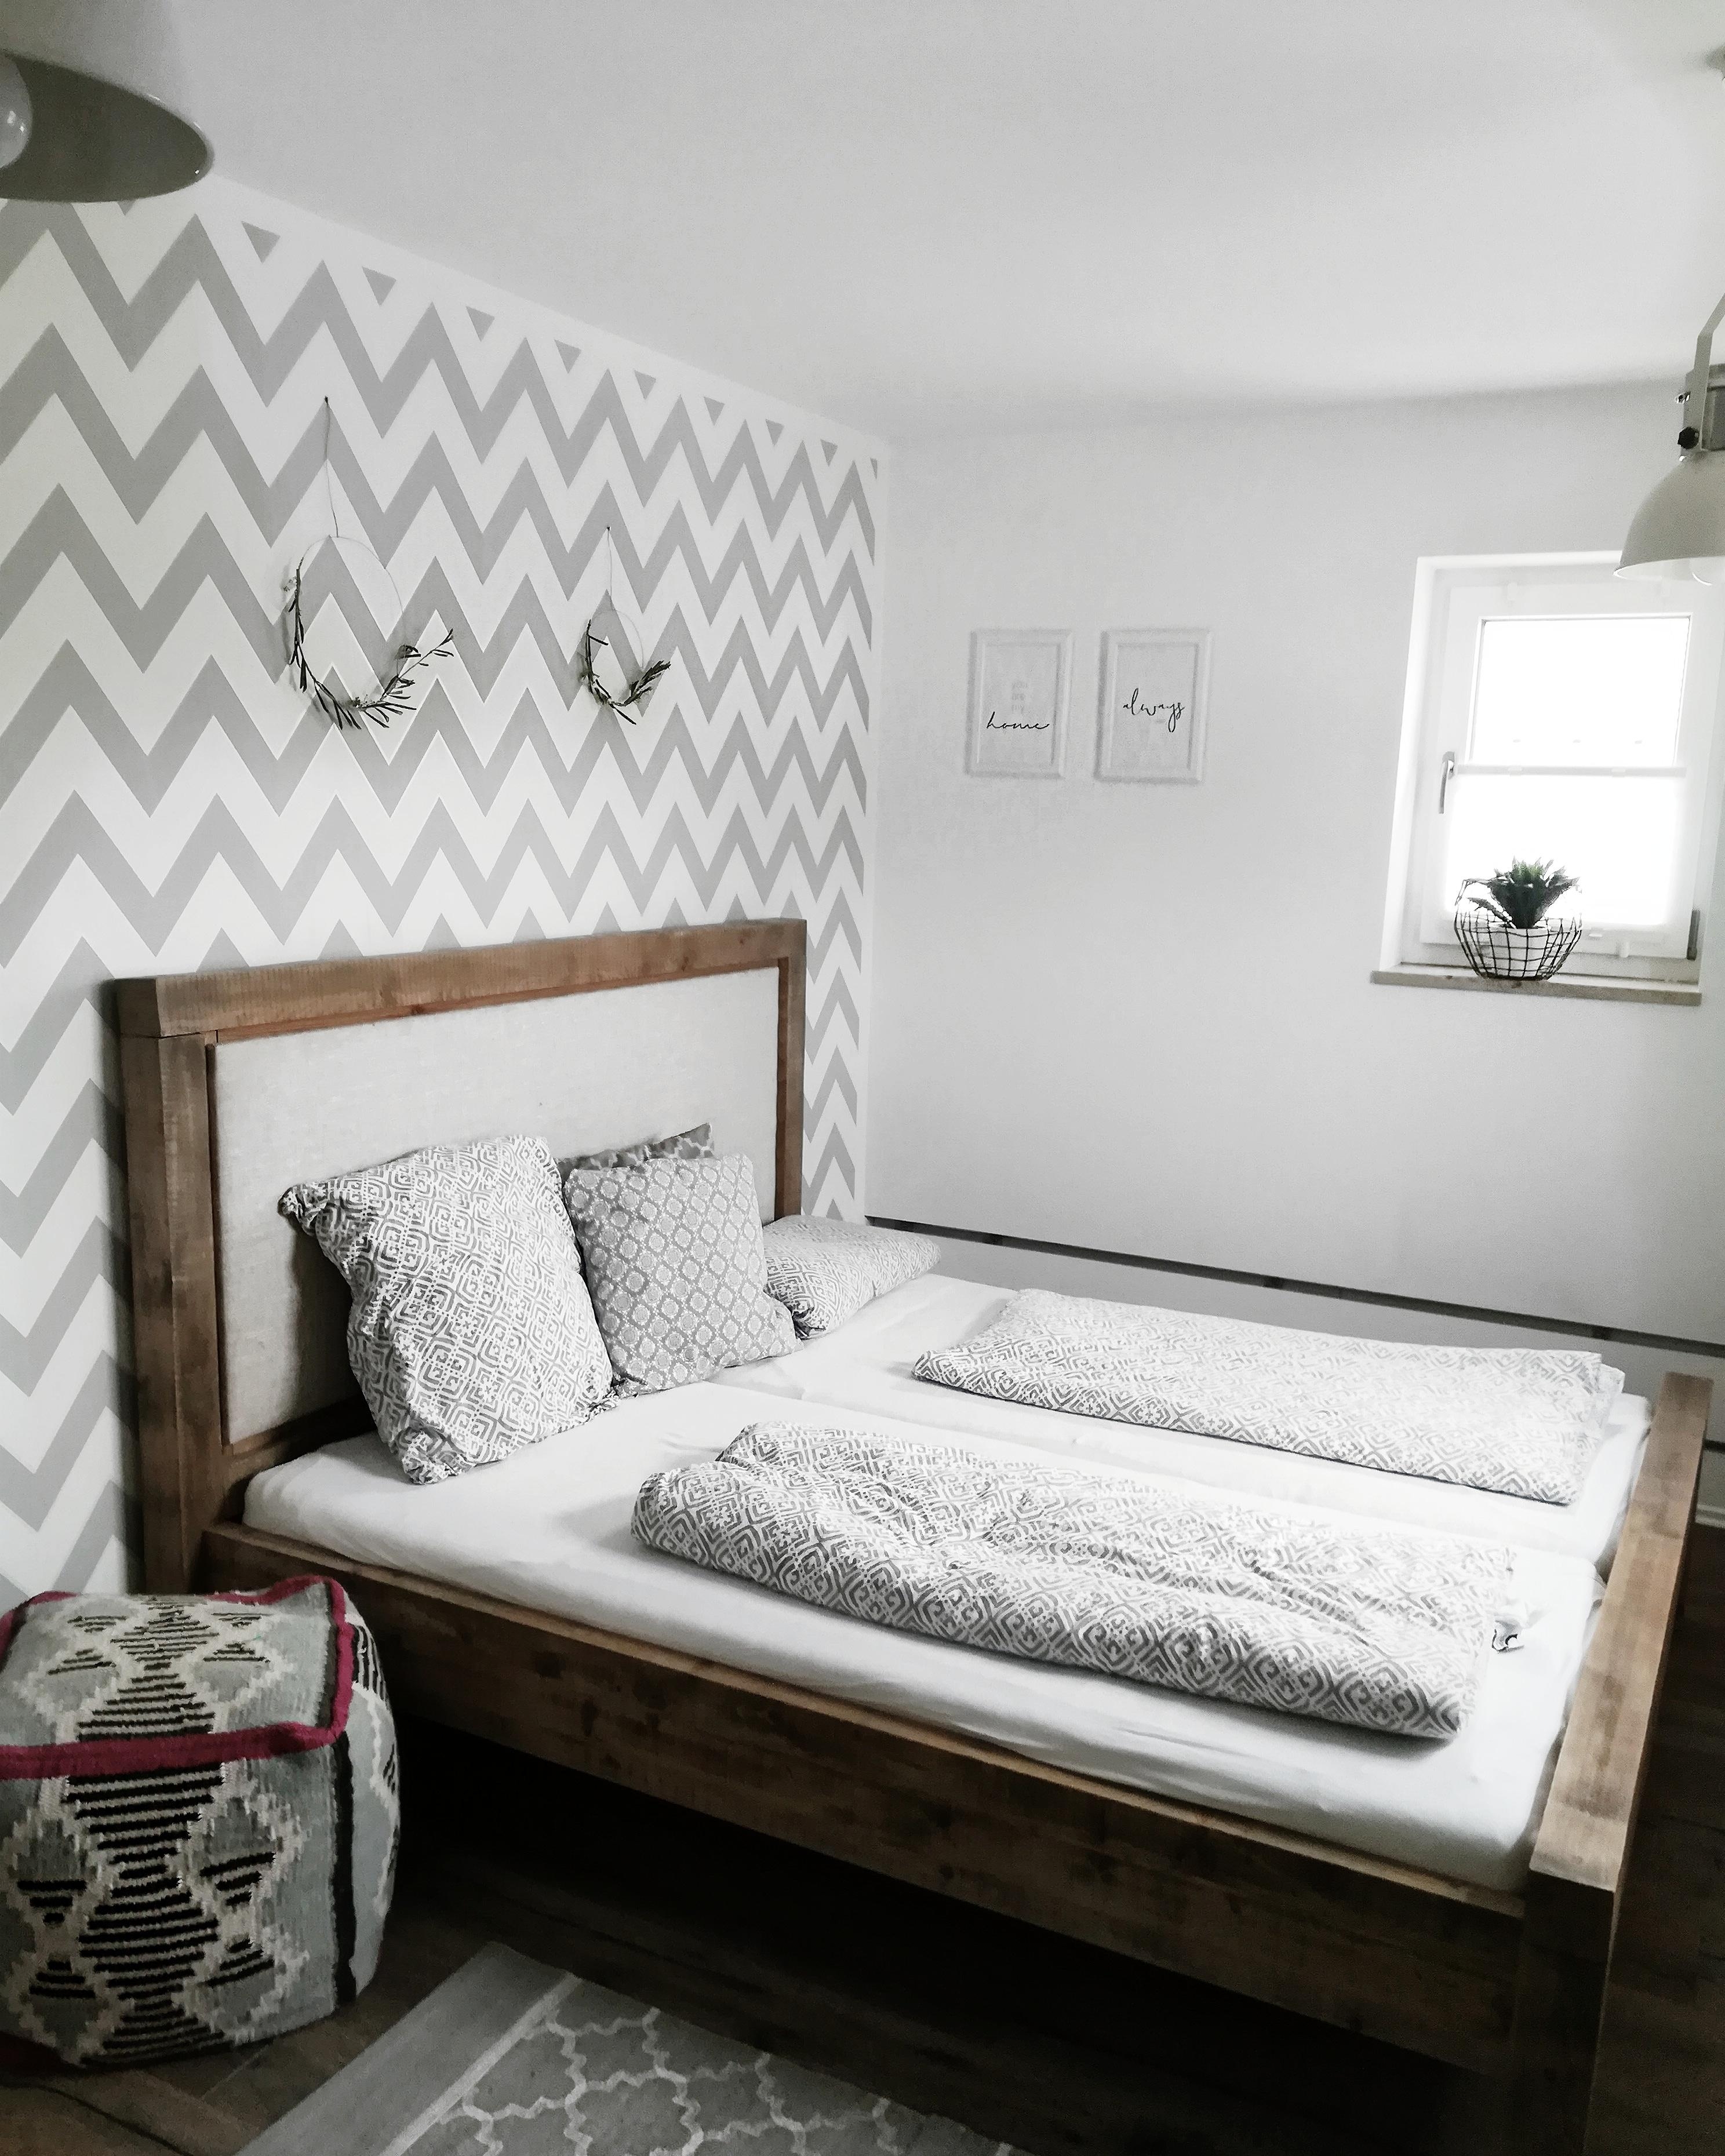 #schlafzimmer #bedroom #vintage #solebich #zeigthereurewohnung #couchmagazin #couchstyle #wohnungseinrichtung 